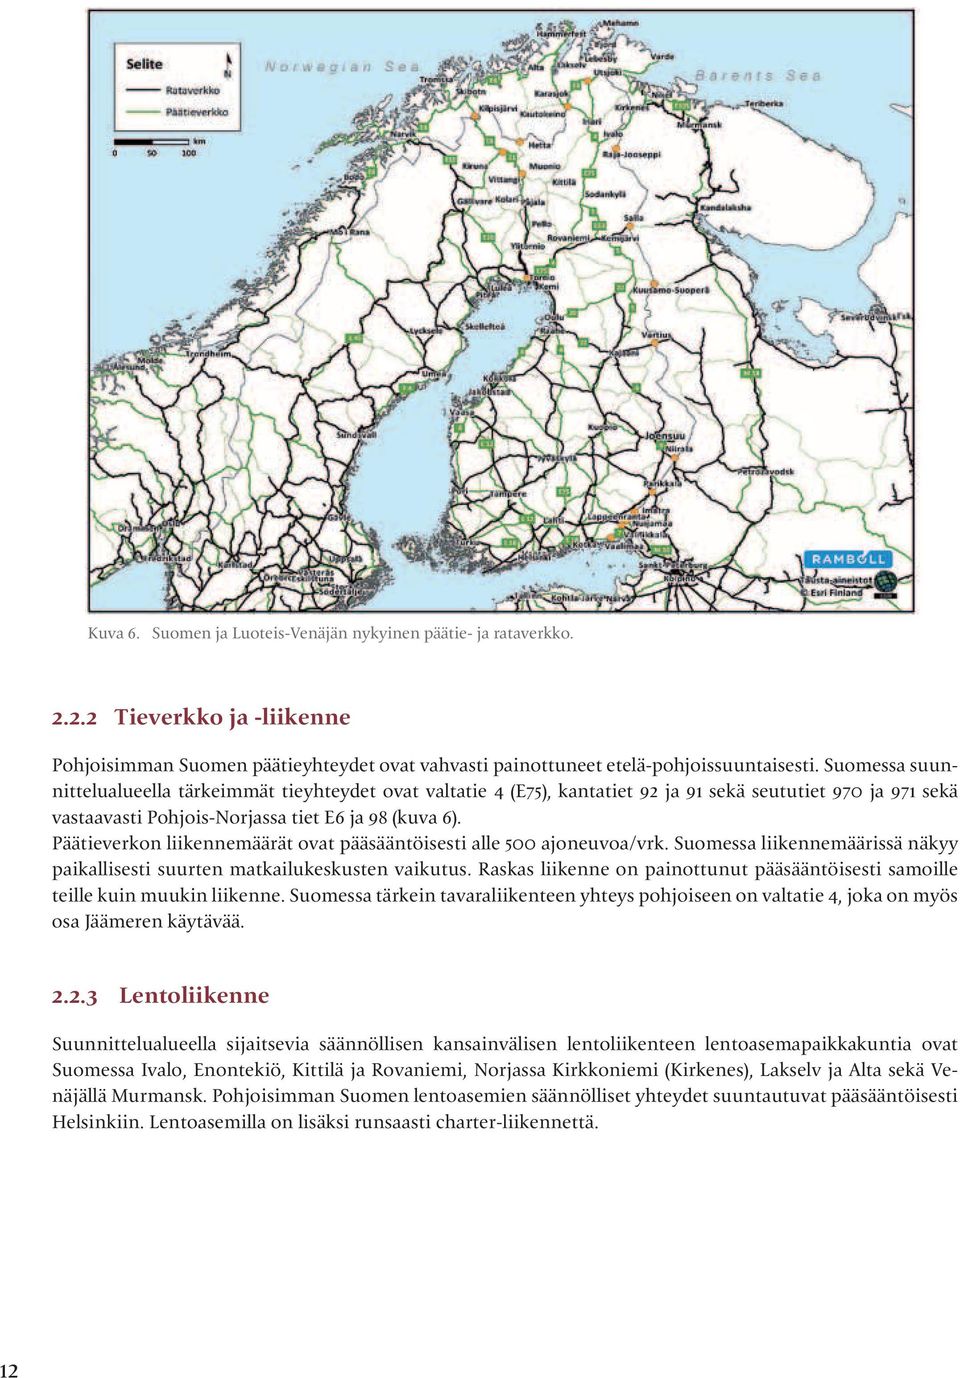 Päätieverkon liikennemäärät ovat pääsääntöisesti alle 500 ajoneuvoa/vrk. Suomessa liikennemäärissä näkyy paikallisesti suurten matkailukeskusten vaikutus.